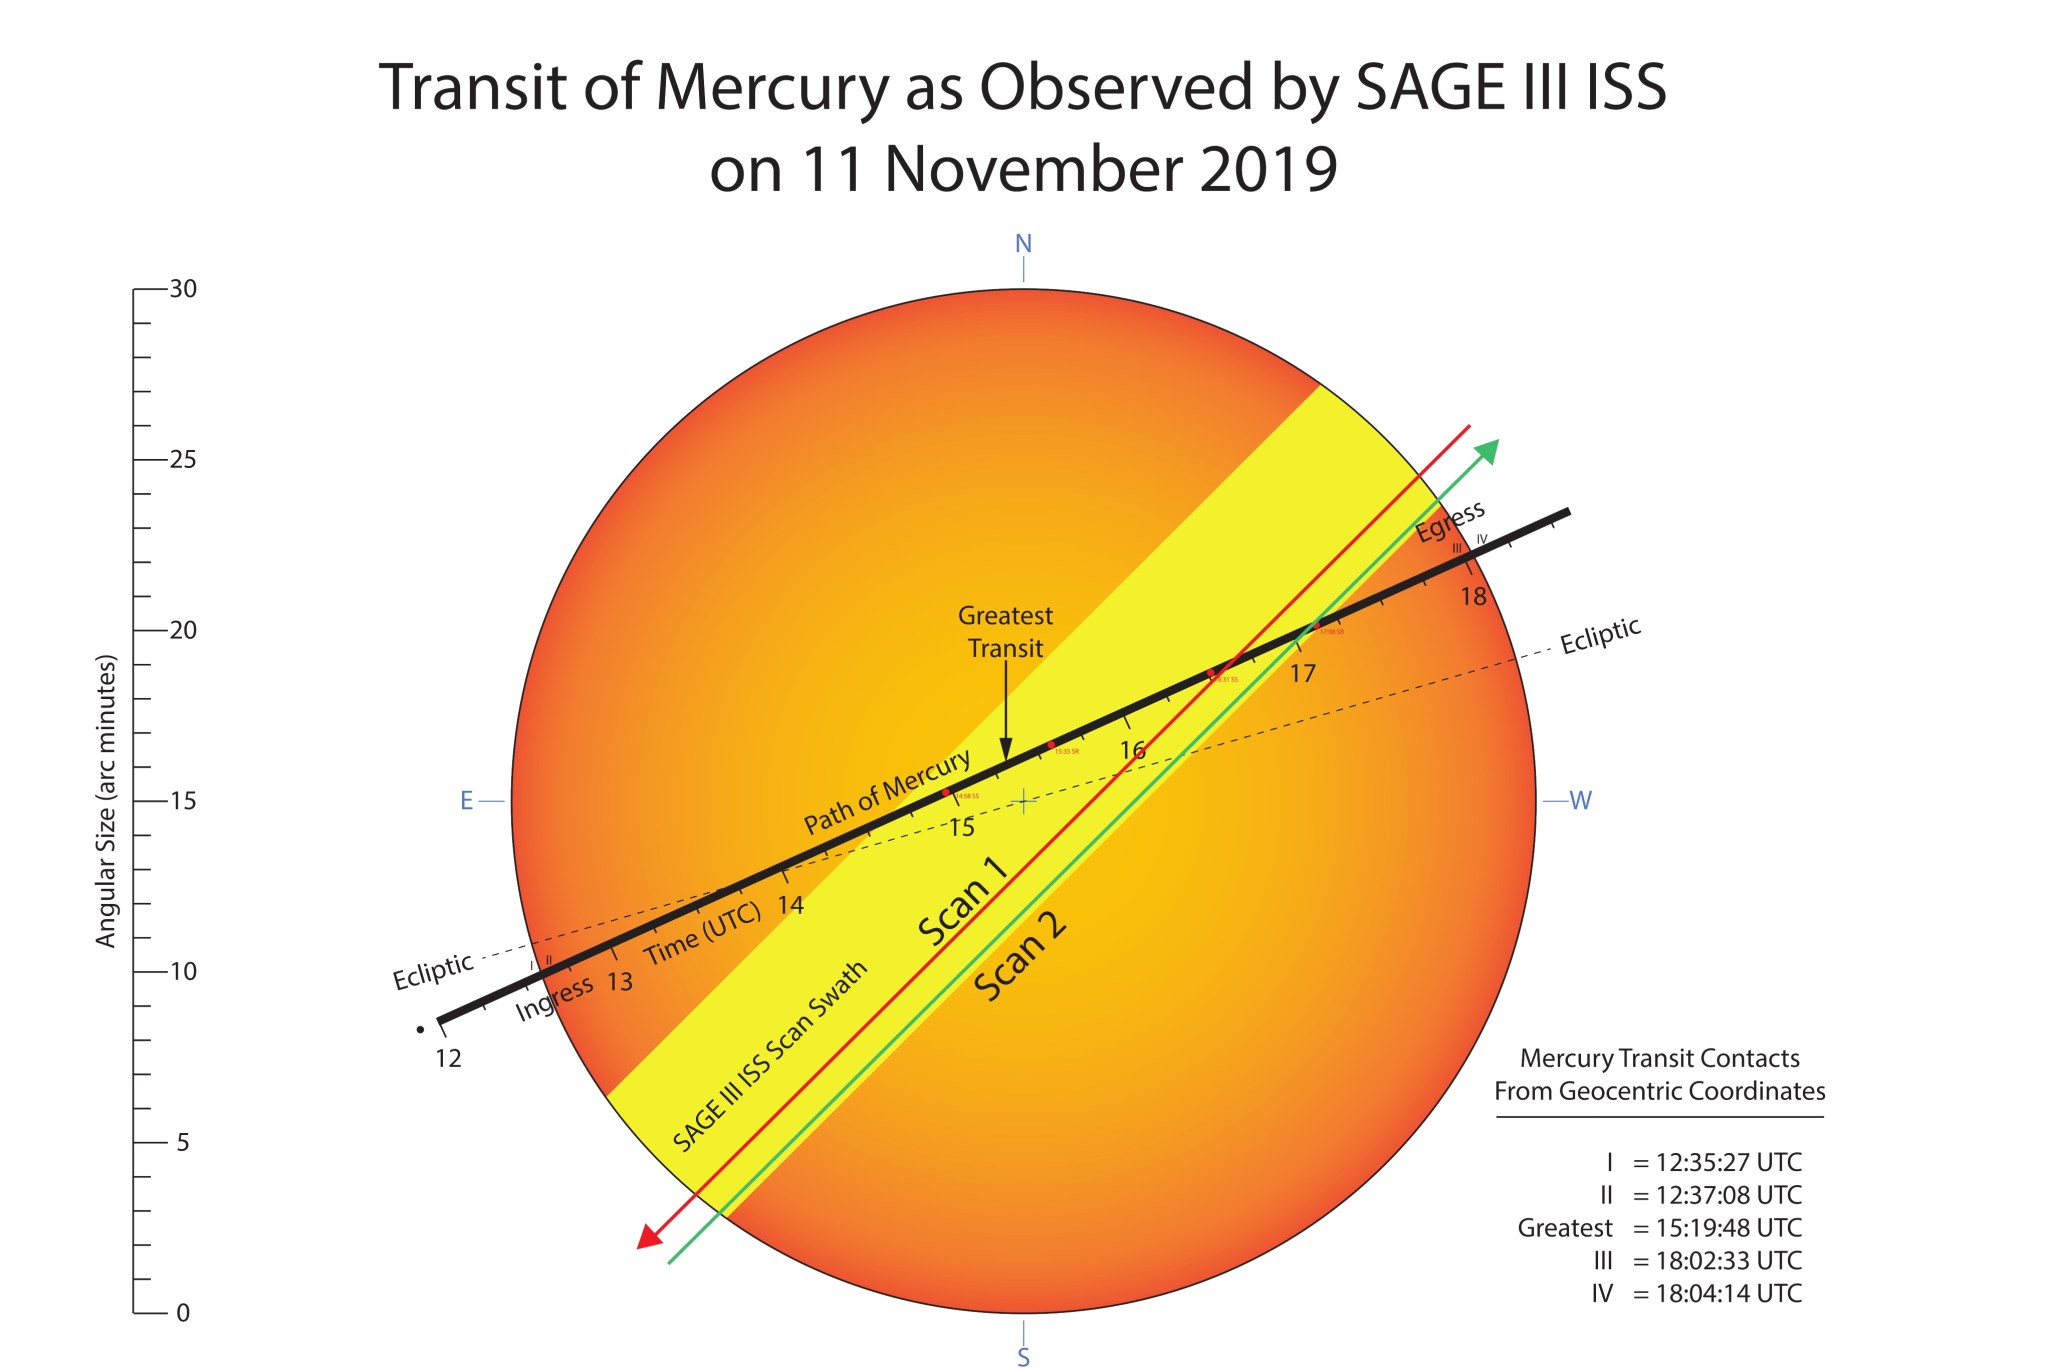 SAGE III sees Mercury transit